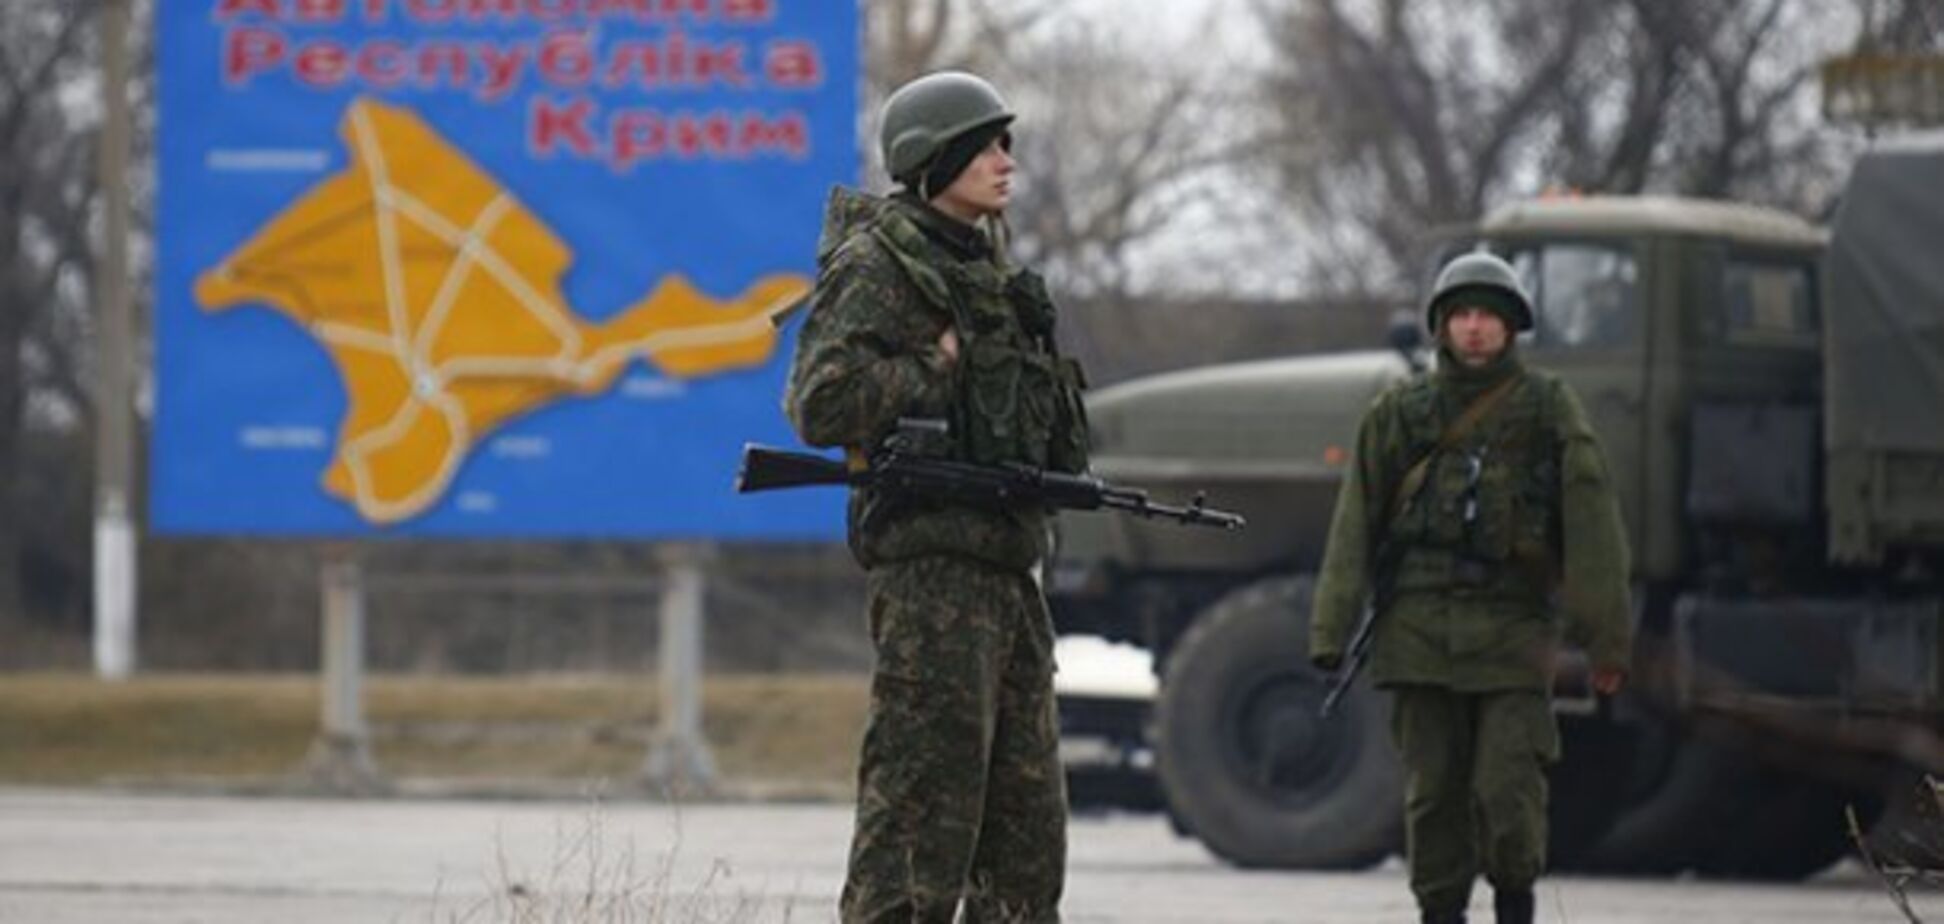 Обольщение Крымом развеялось: теперь бегут все